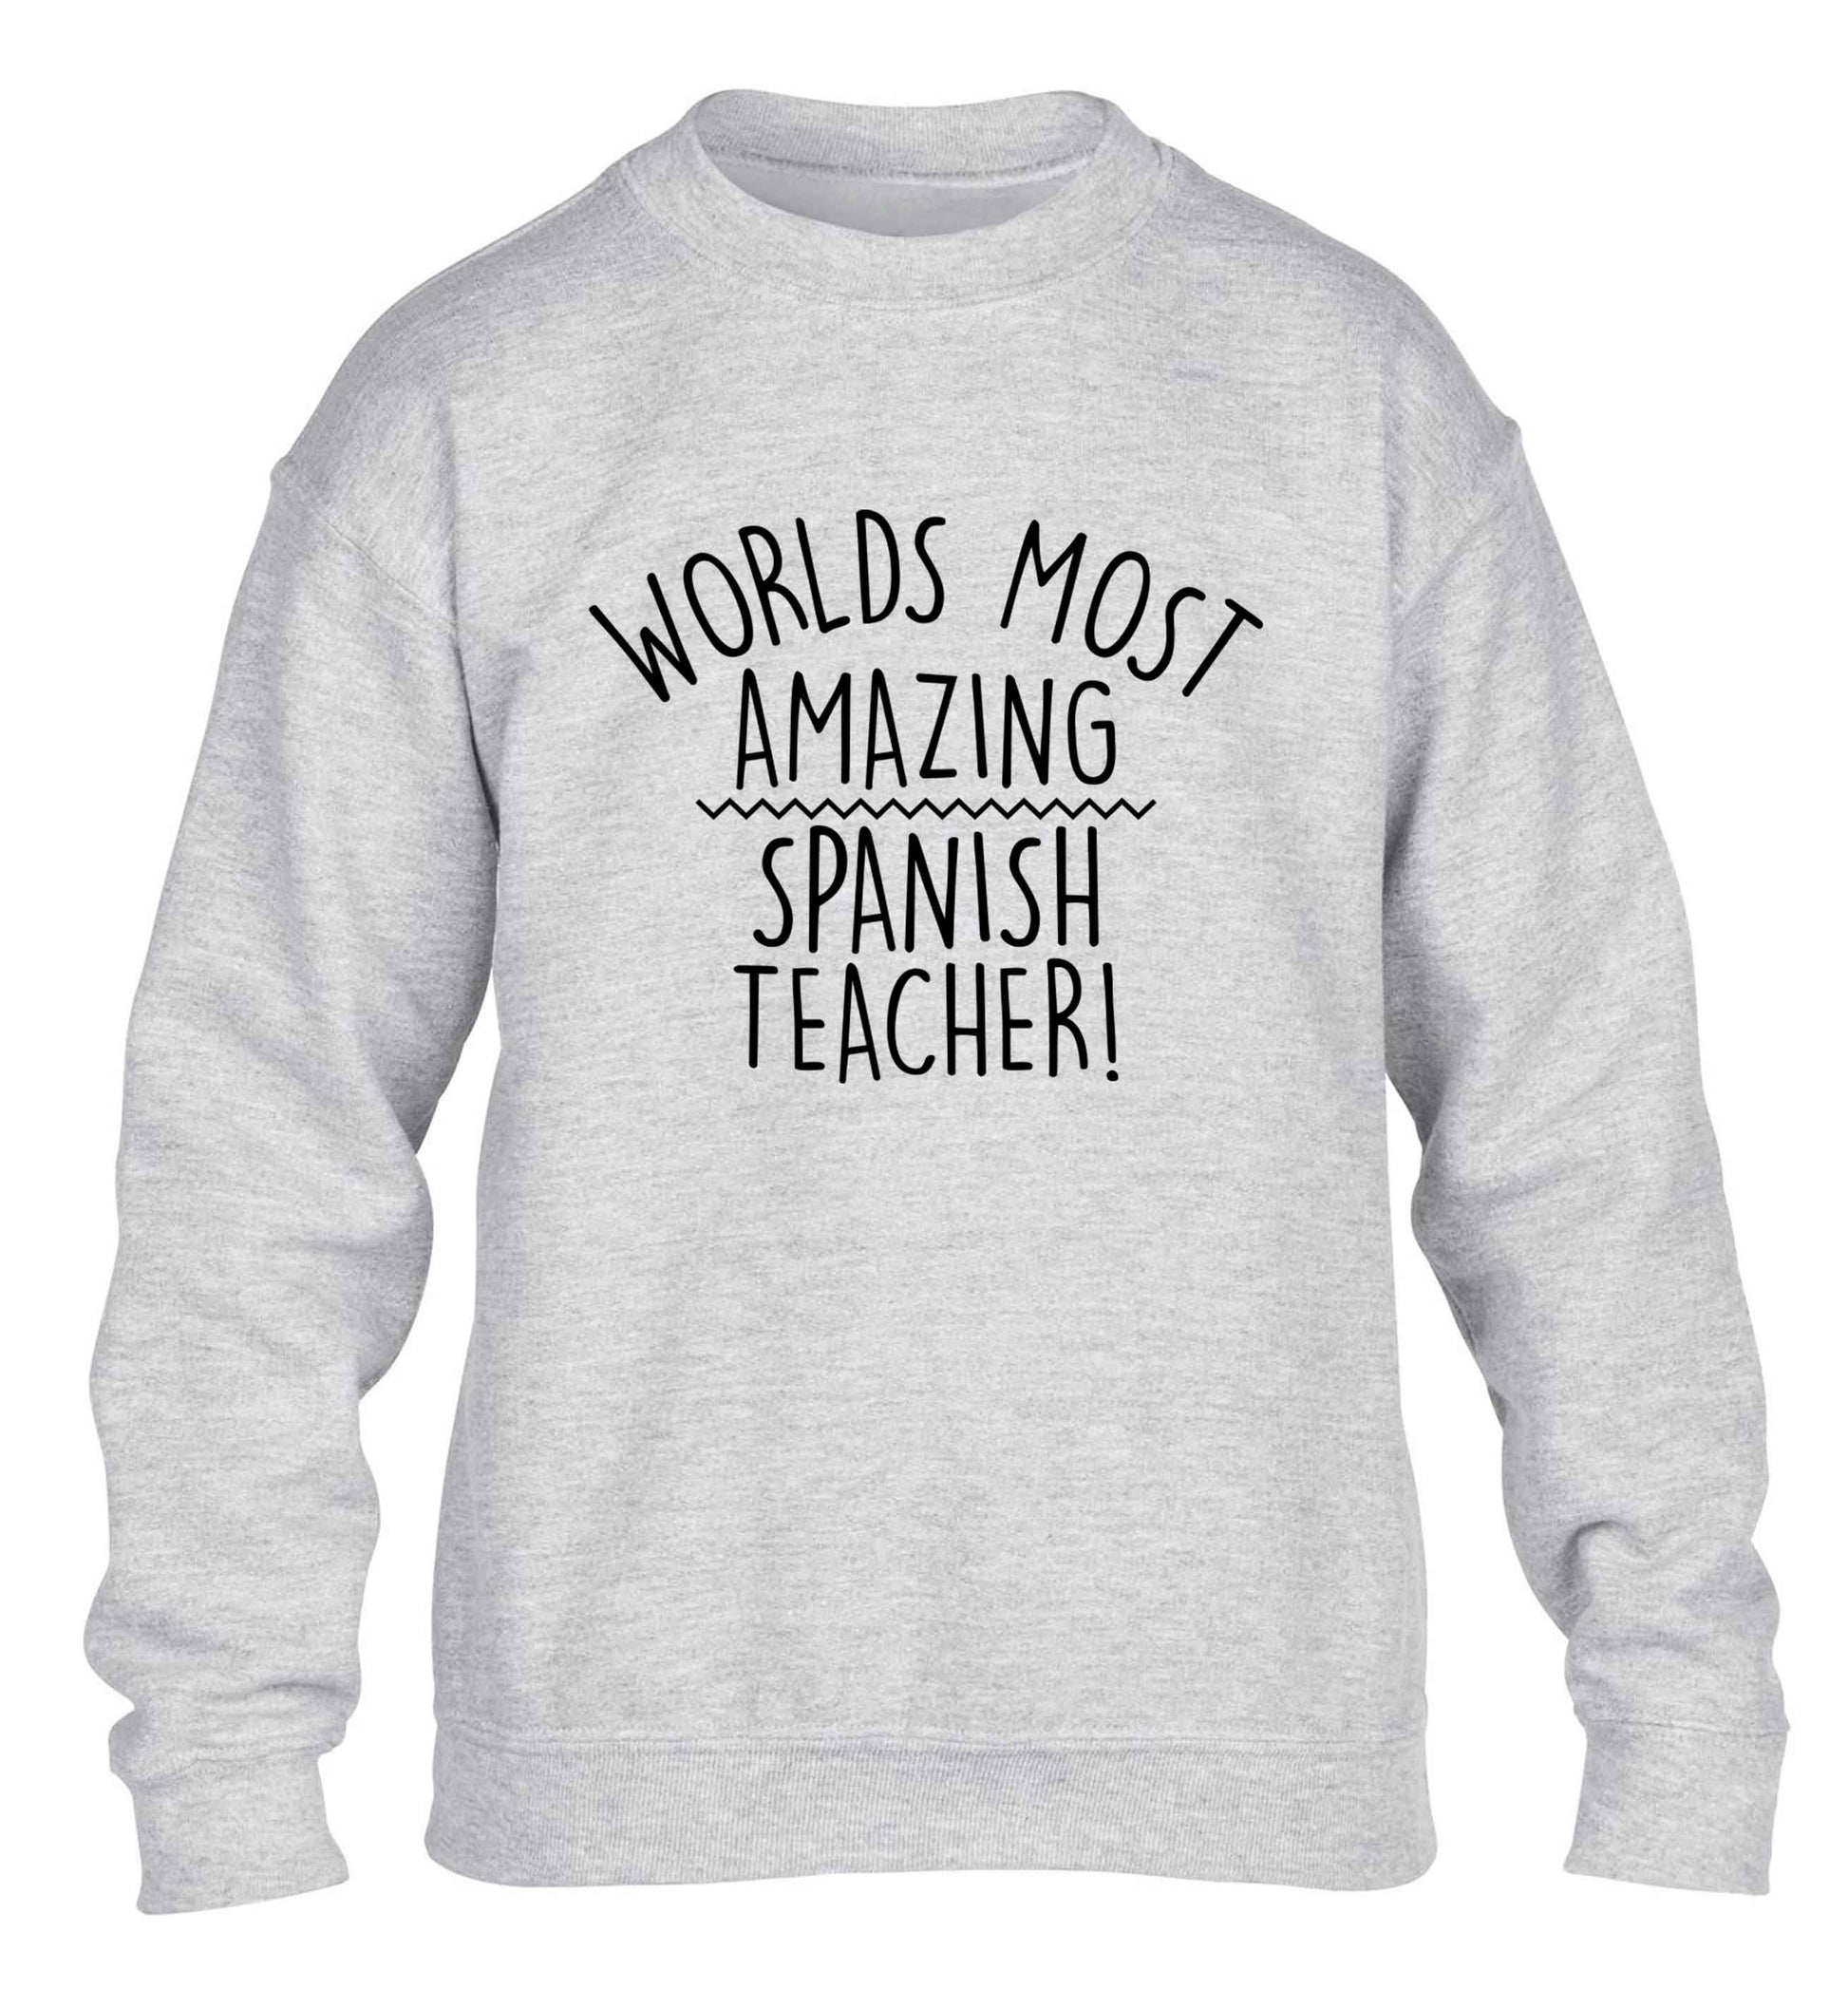 Worlds most amazing Spanish teacher children's grey sweater 12-13 Years